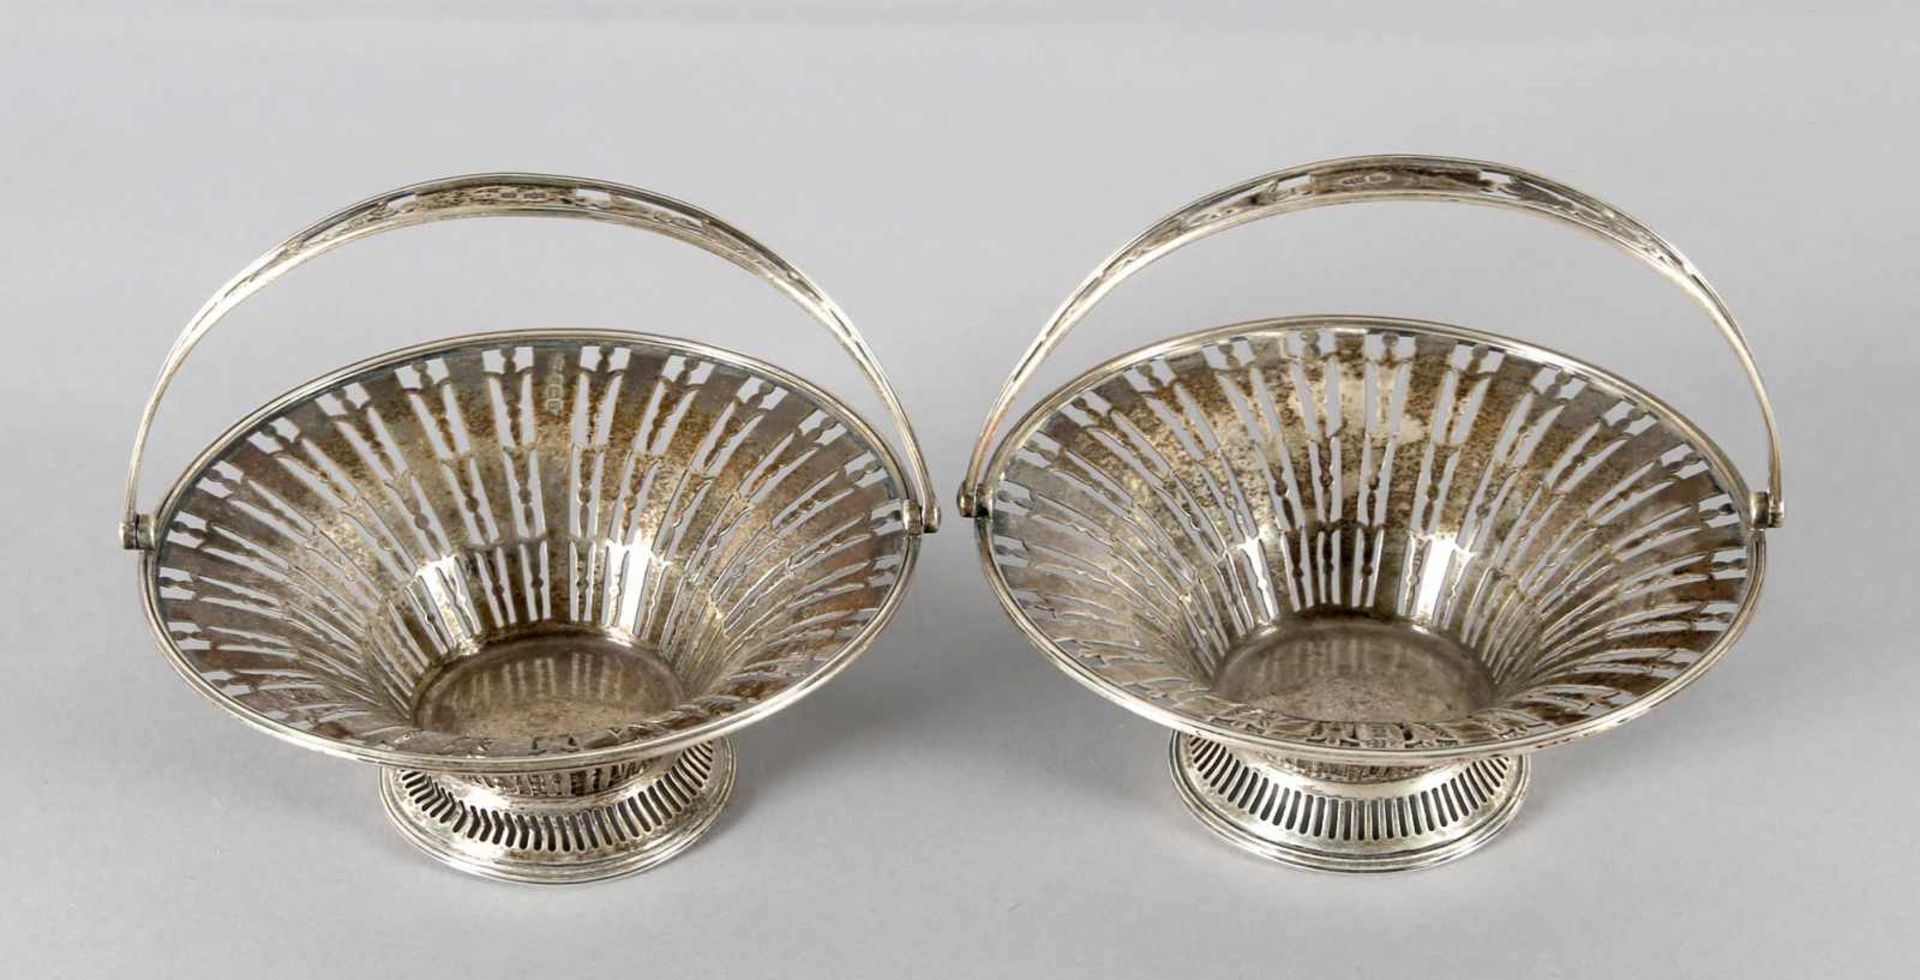 Paar runde Korbschalen aus Silber, Sheffield 1909zwei Korbschalen in Durchbruchsarbeit mit